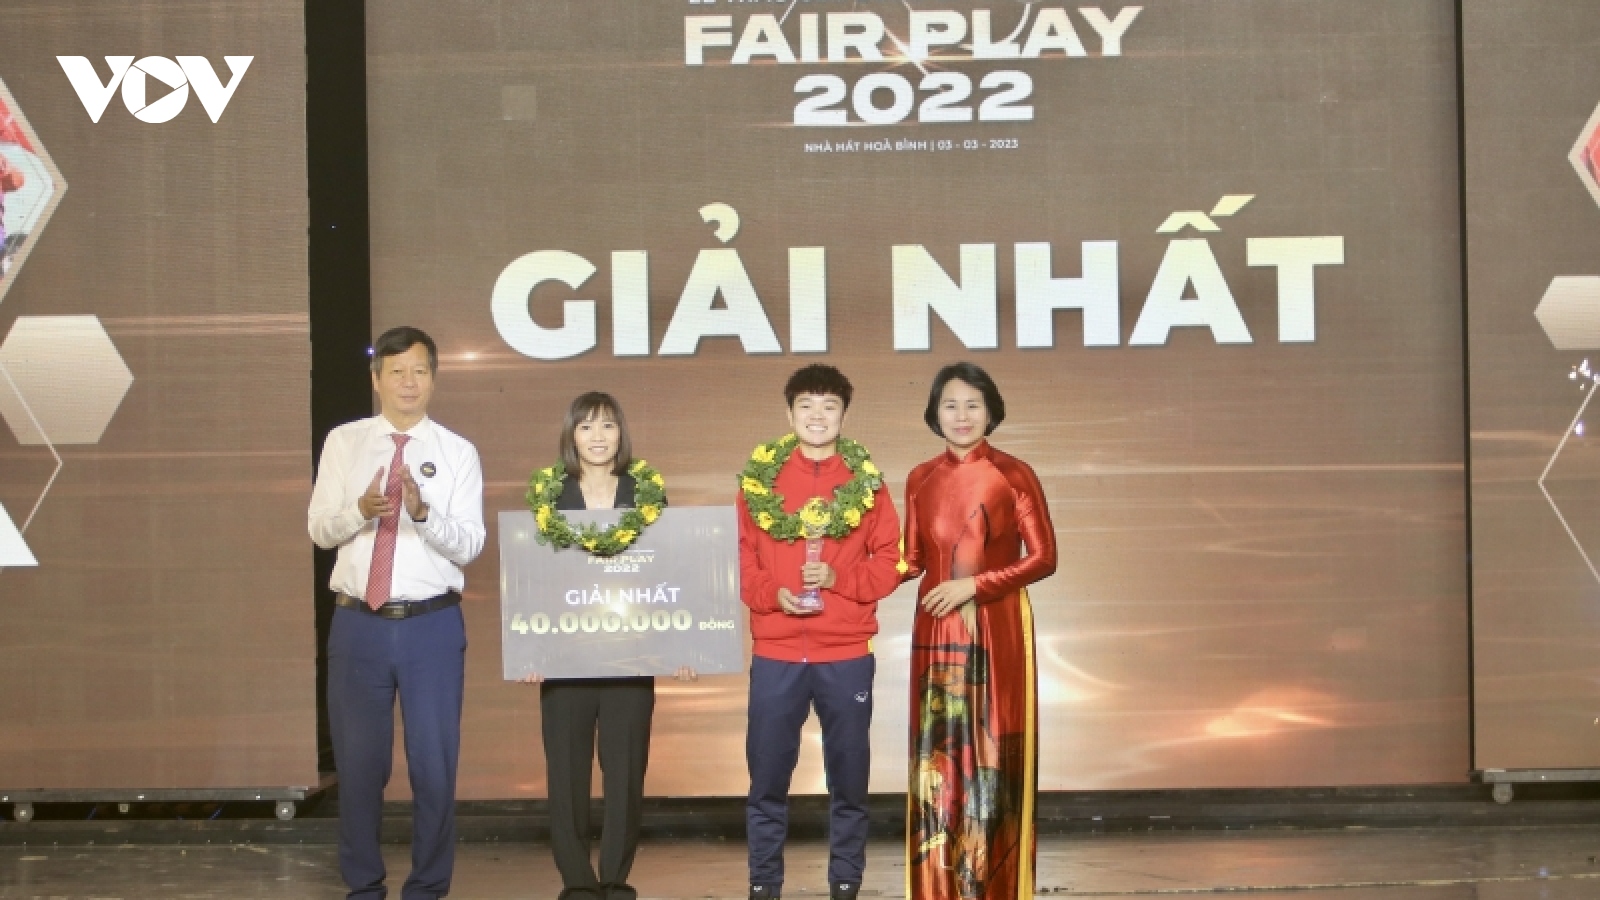 Vượt khó Covid-19 đi dự World Cup, ĐT nữ Việt Nam được trao giải Fair Play